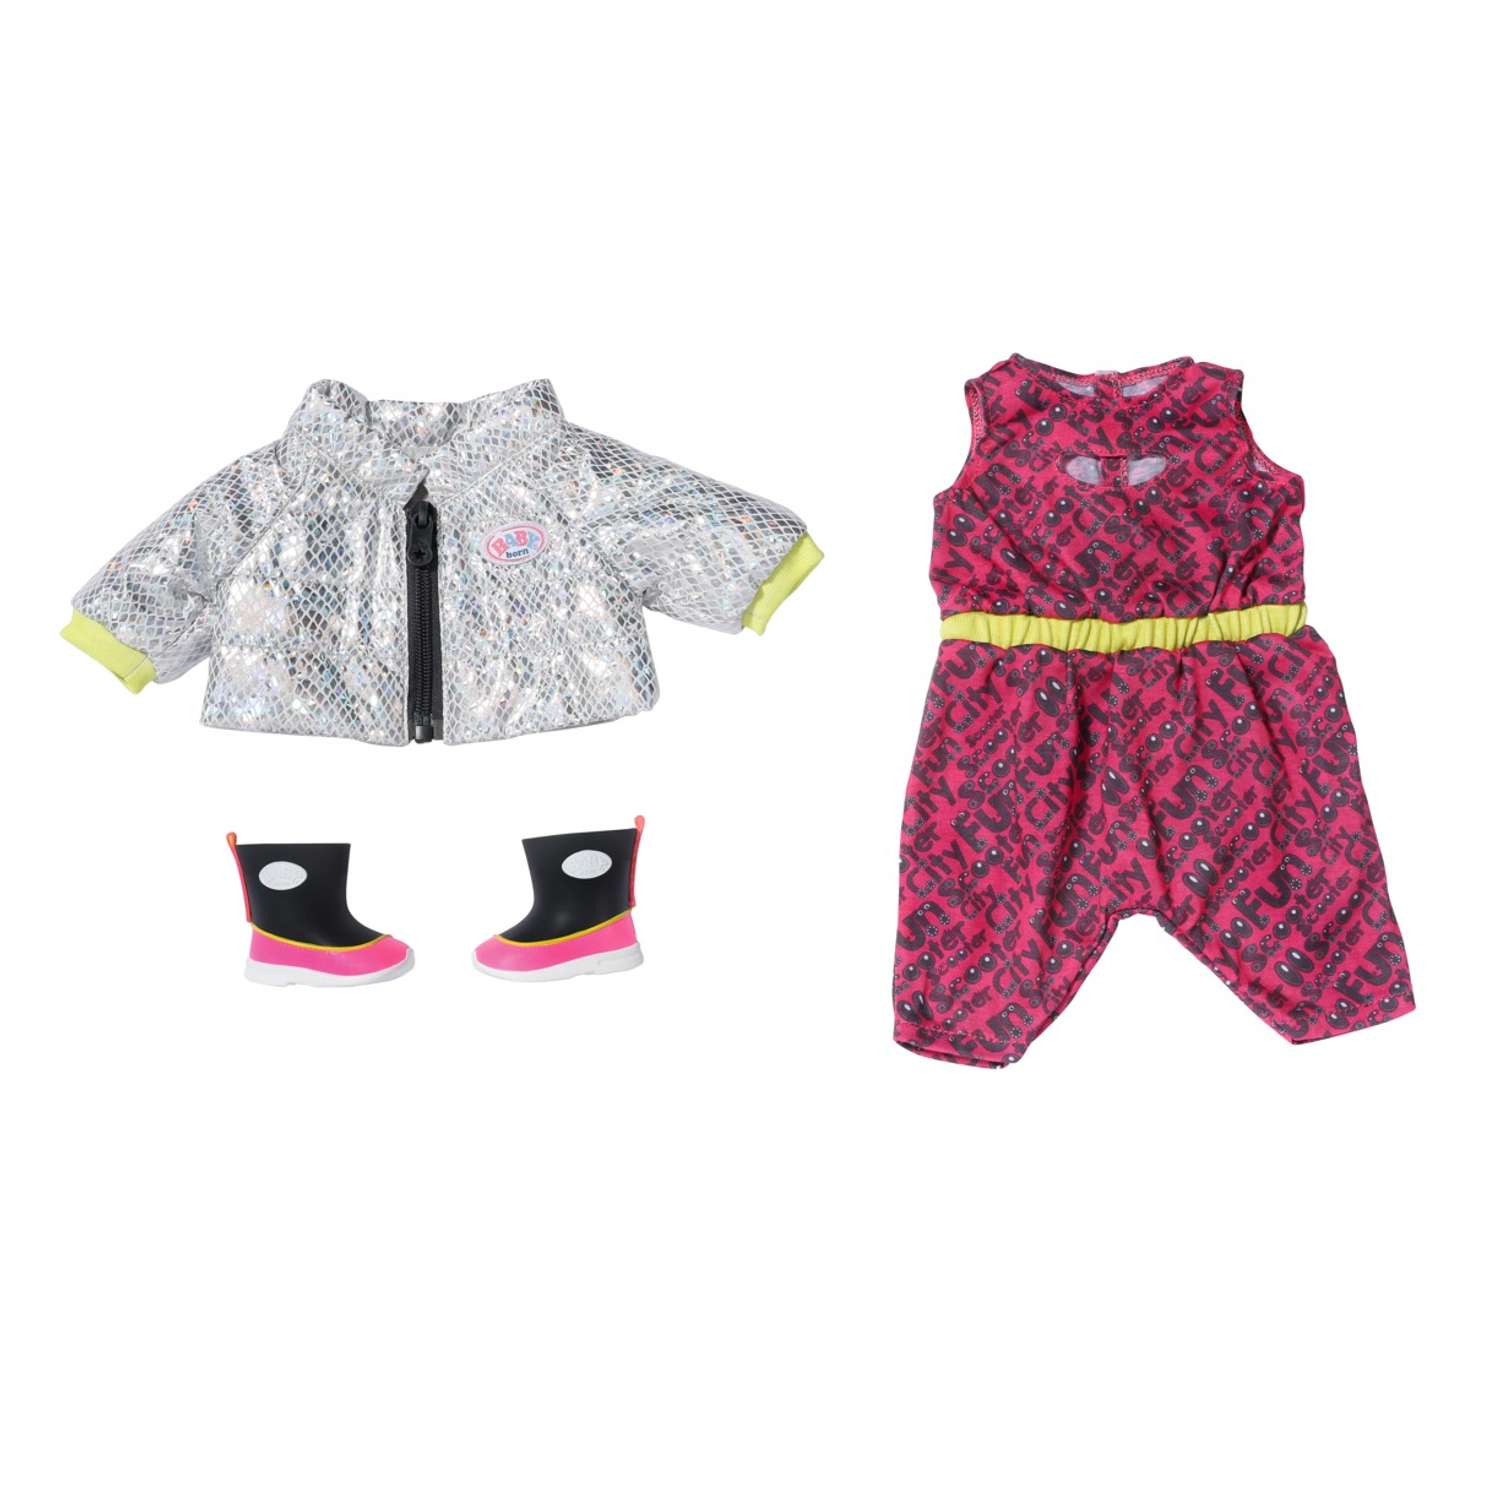 Набор одежды для куклы Zapf Creation BABY born делюкс для поездок на скутере 830-215 - фото 1